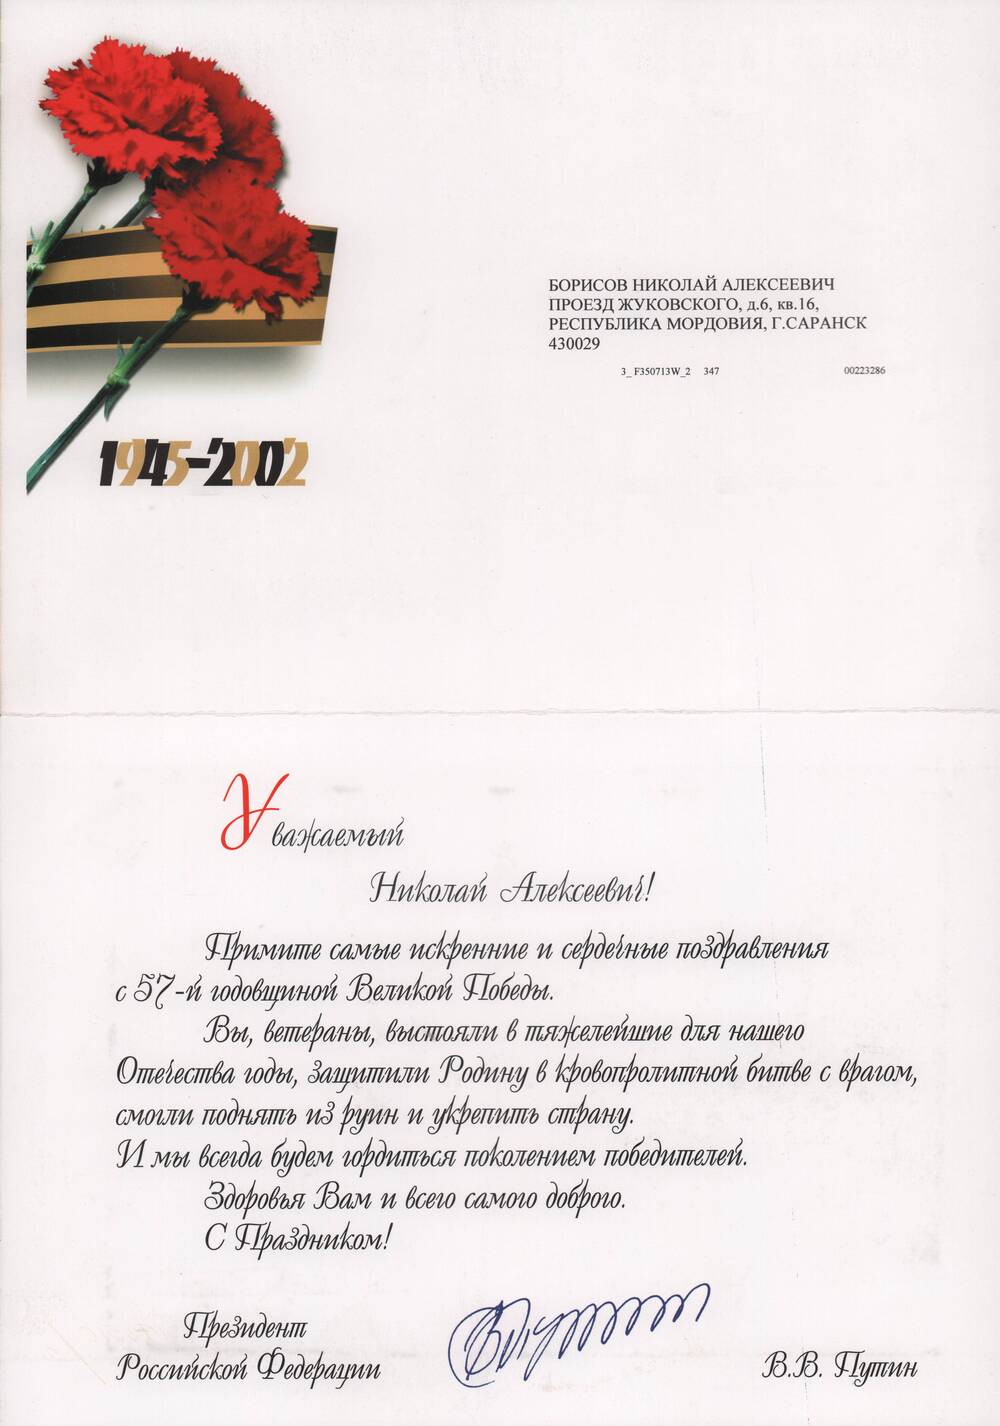 Открытка поздравительная Борисову Николаю Алексеевичу с 57-й годовщиной Великой Победы.